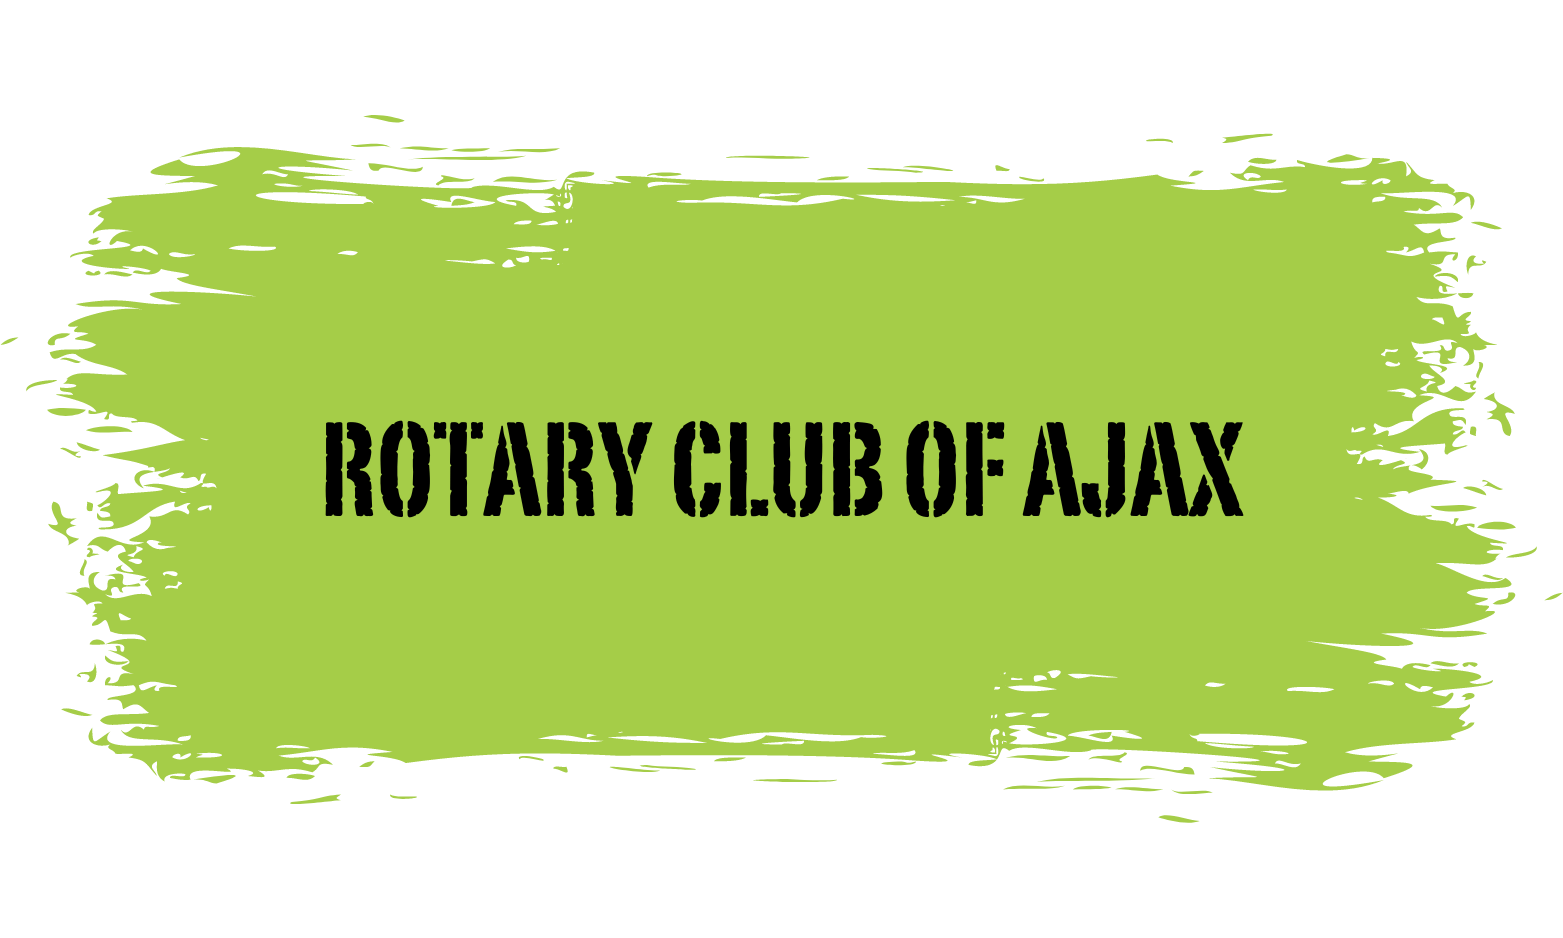 Rotary club of Ajax